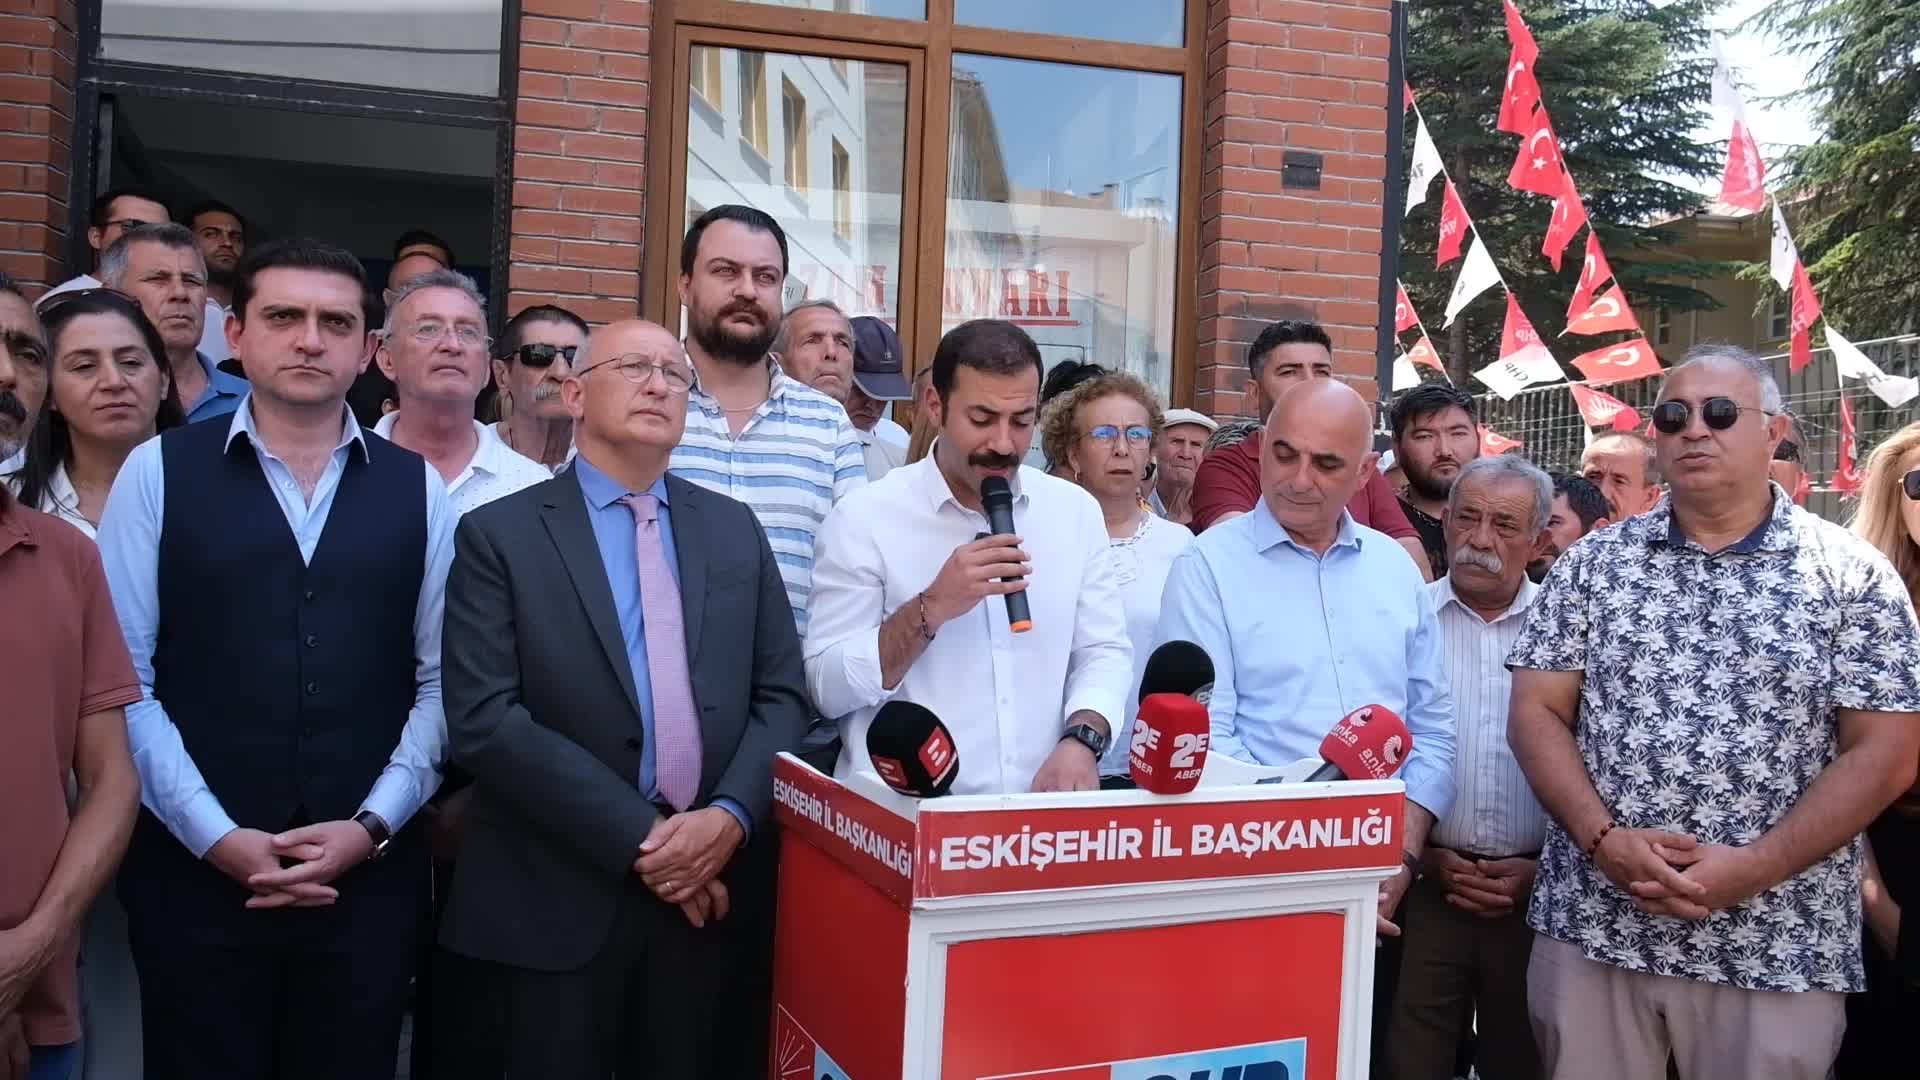 Katliam yasasına karşı direniş diyen CHP'li il başkanı ifadeye çağrıldı